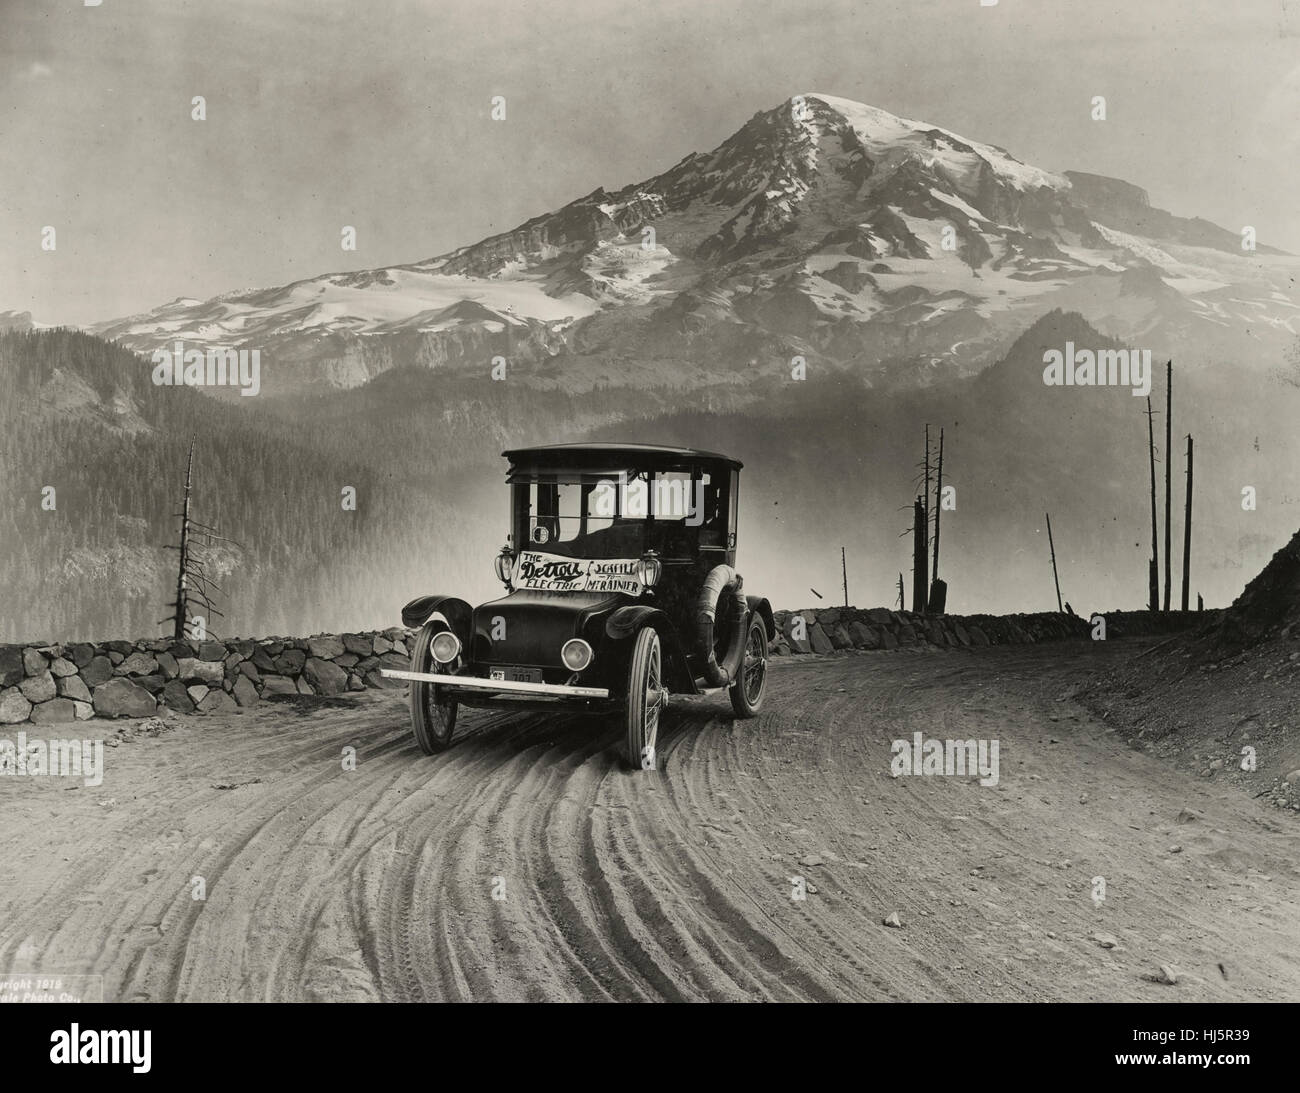 Detroit Electric auto sur tournée promotionnelle à travers les montagnes de Seattle à Mt. Rainier. La photographie montre la voiture électrique produite pour Anderson Voiture électrique Co. avec Mt. Rainier dans la distance. 1919 Banque D'Images